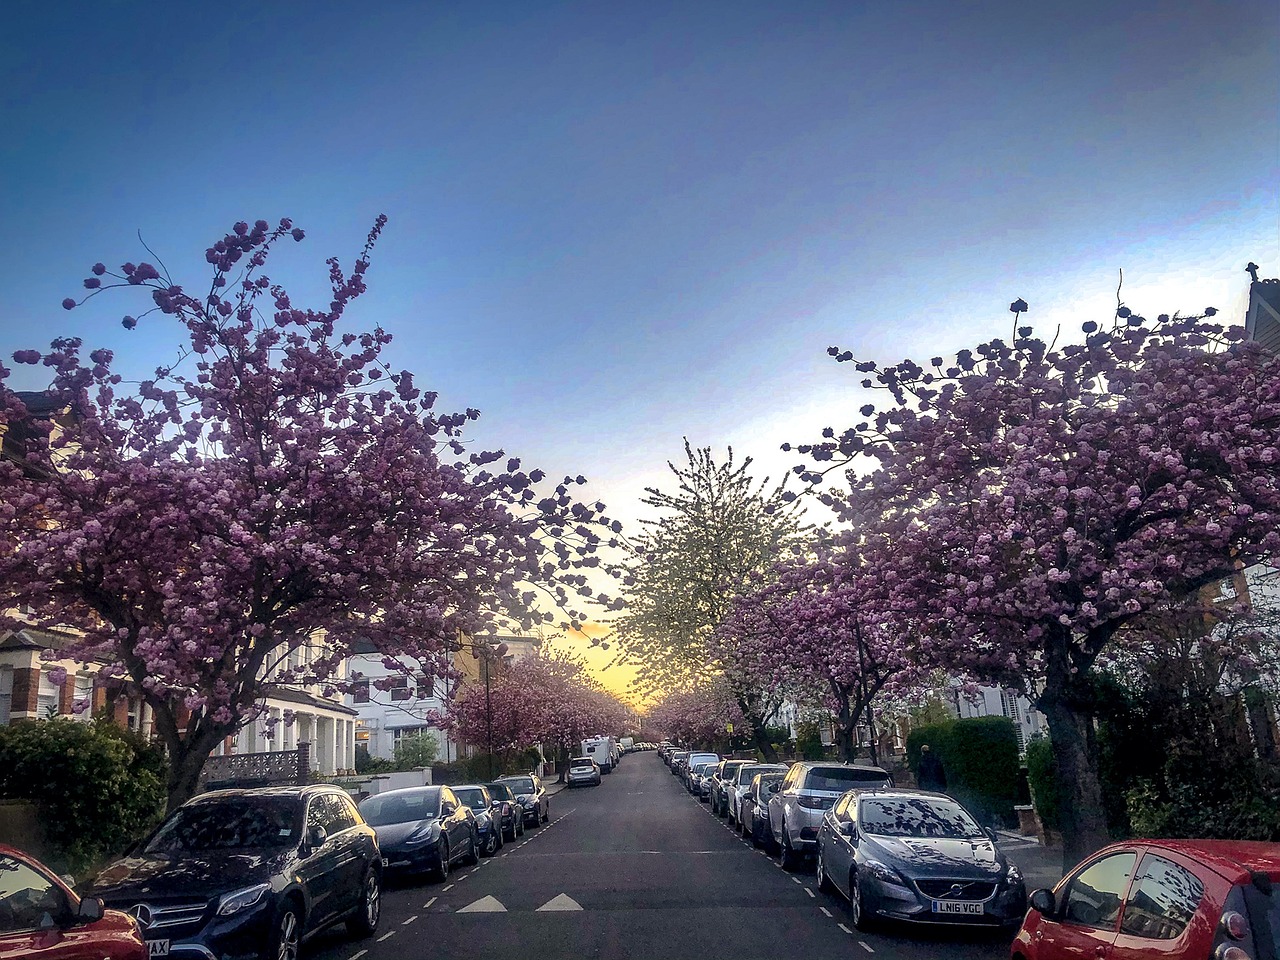 springtime image of a British city